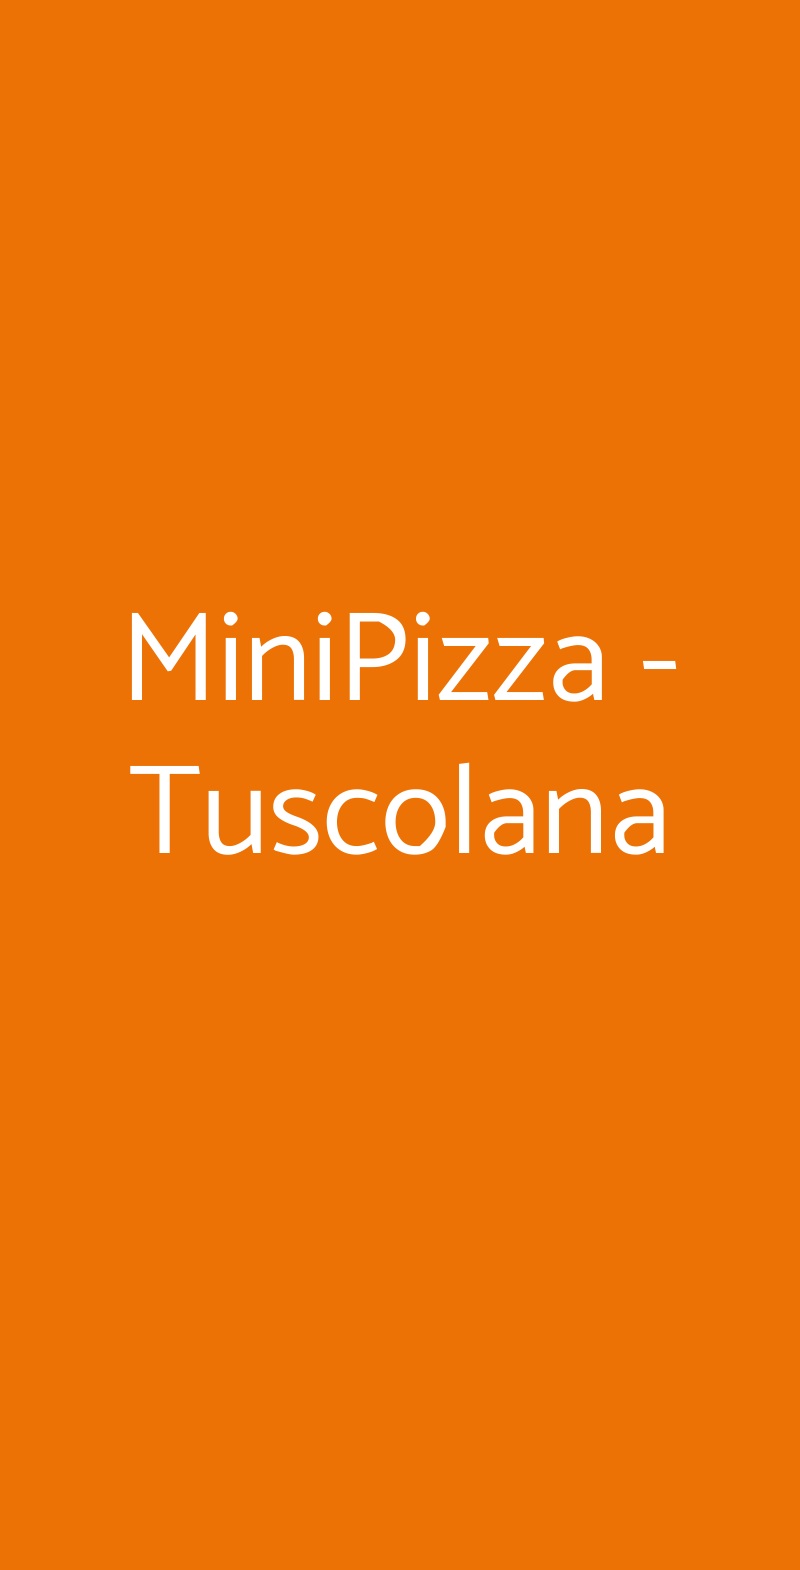 MiniPizza - Tuscolana Roma menù 1 pagina